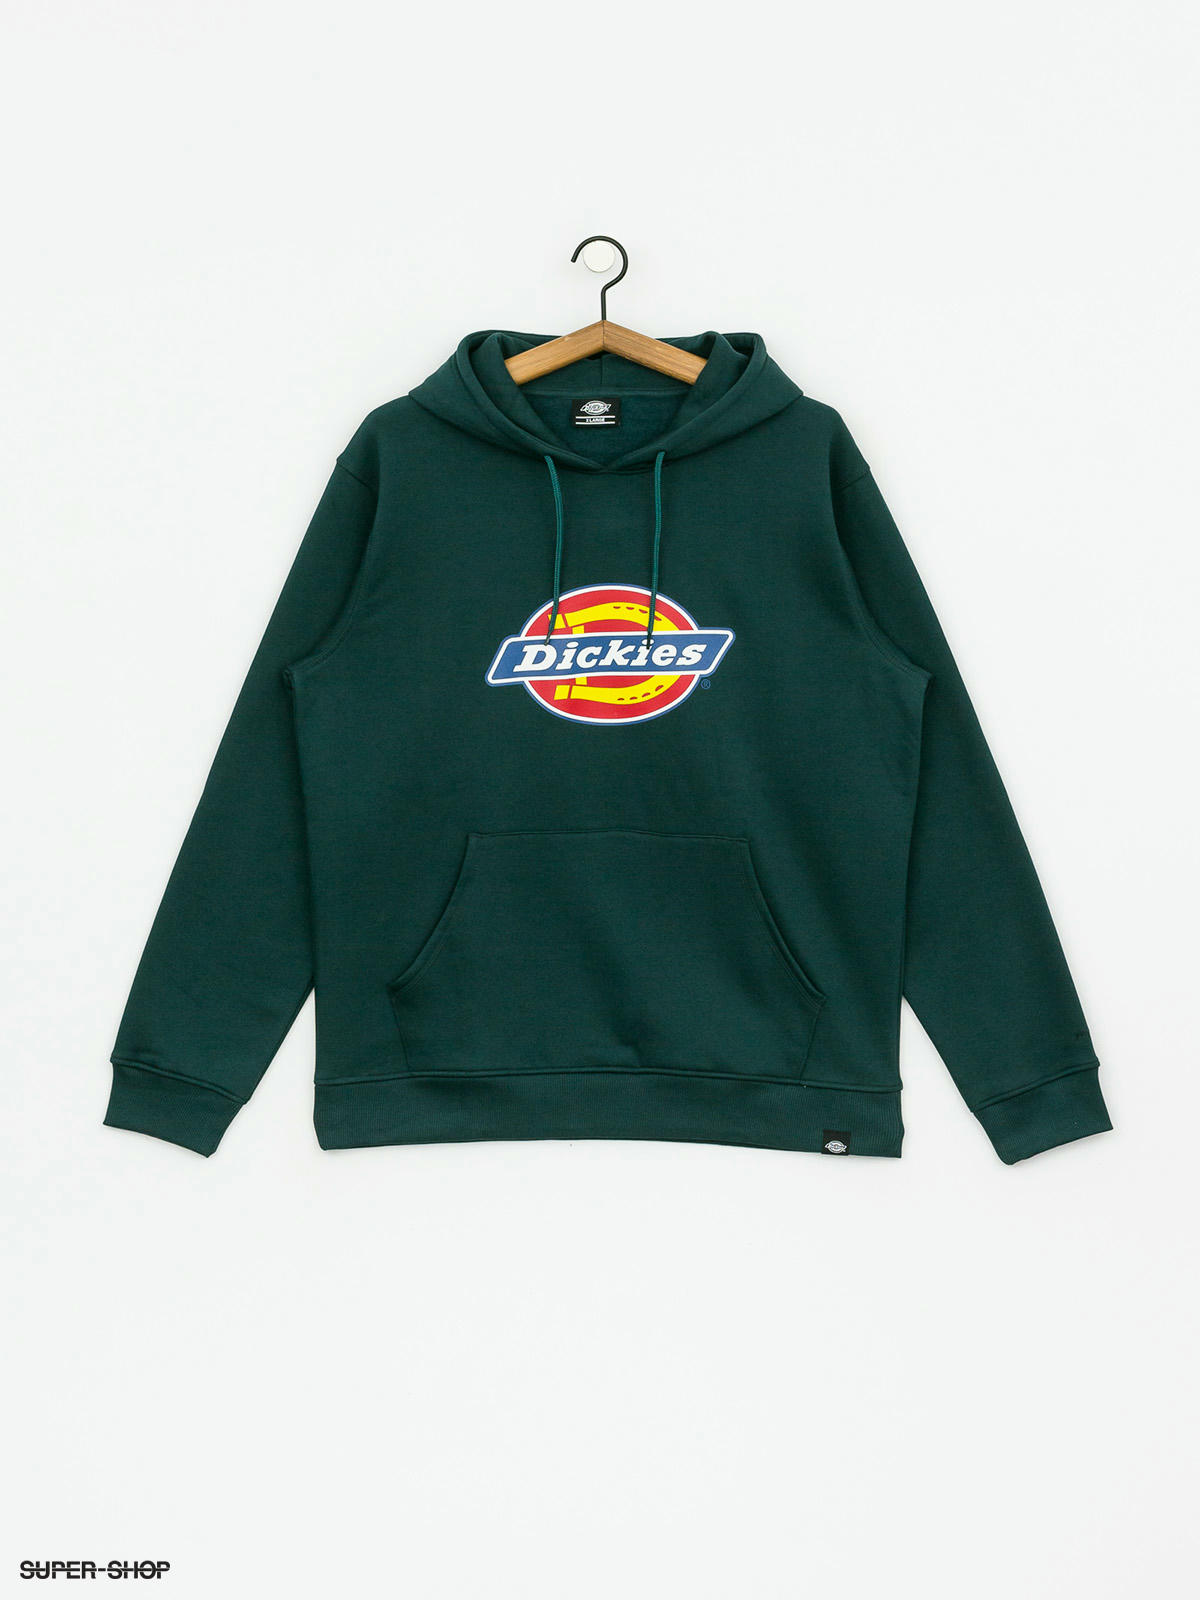 dickies hoodie price